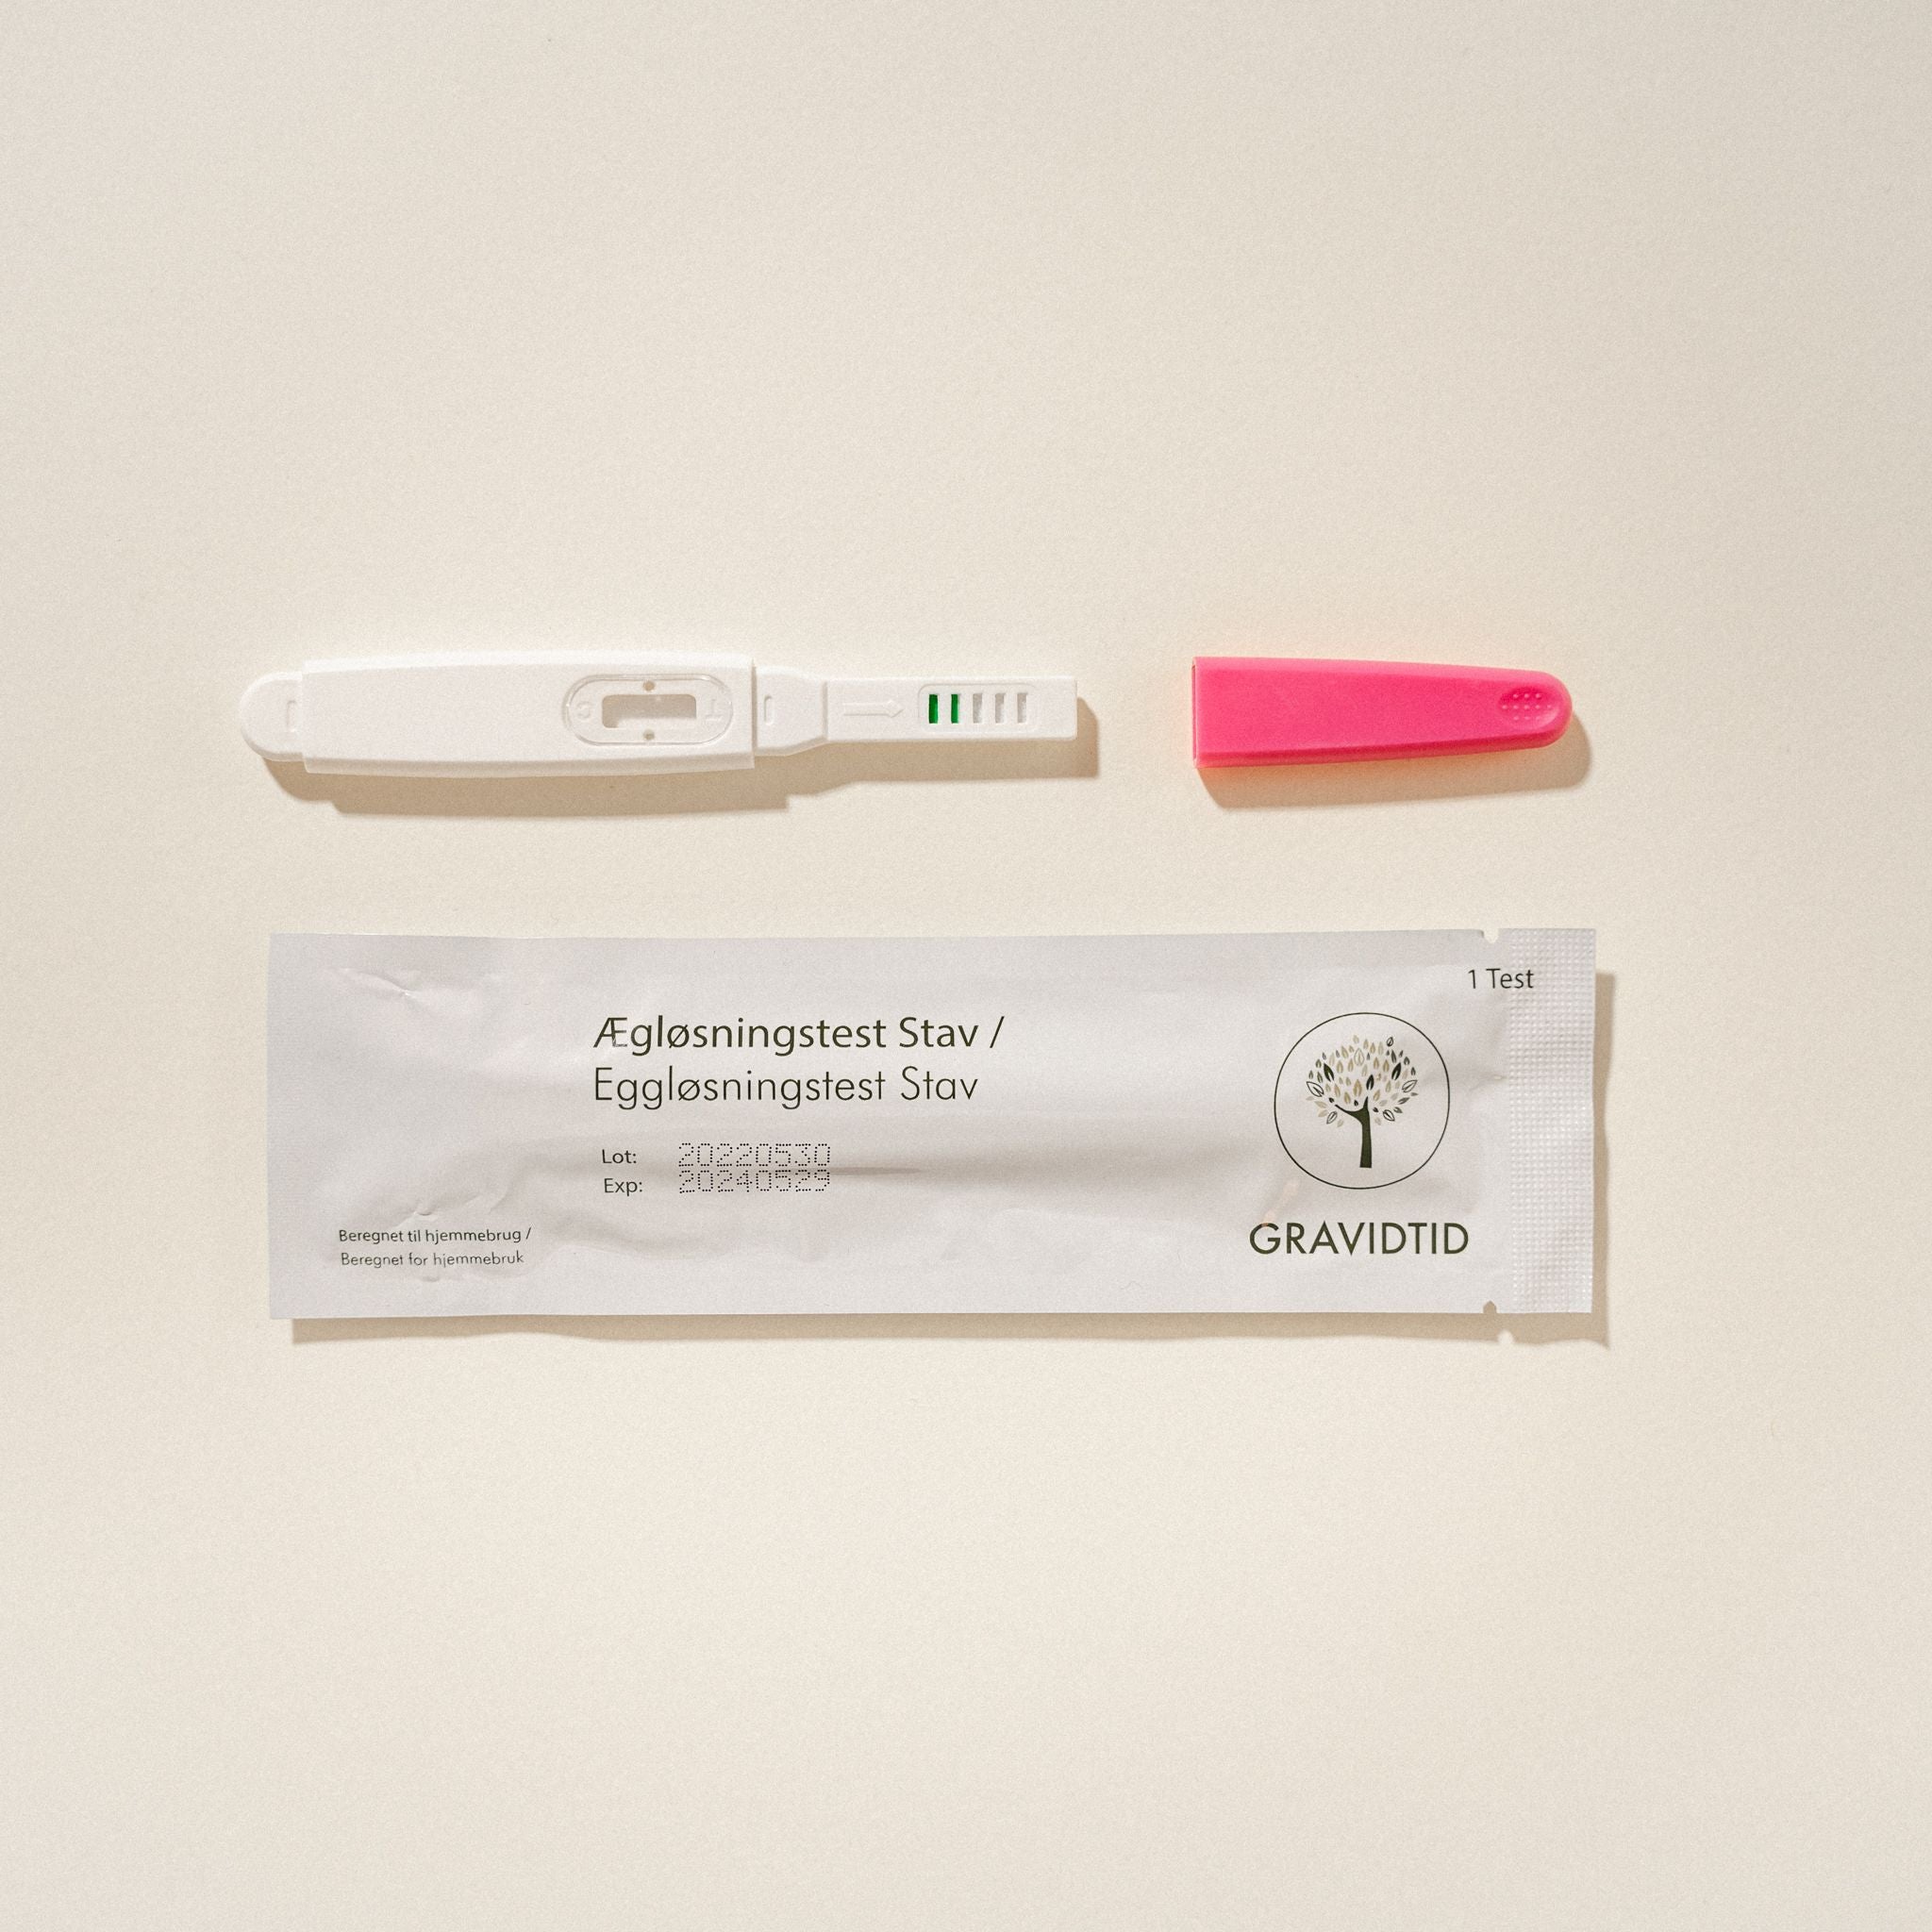 Gravidtid Get Pregnant Package Test Often Stick